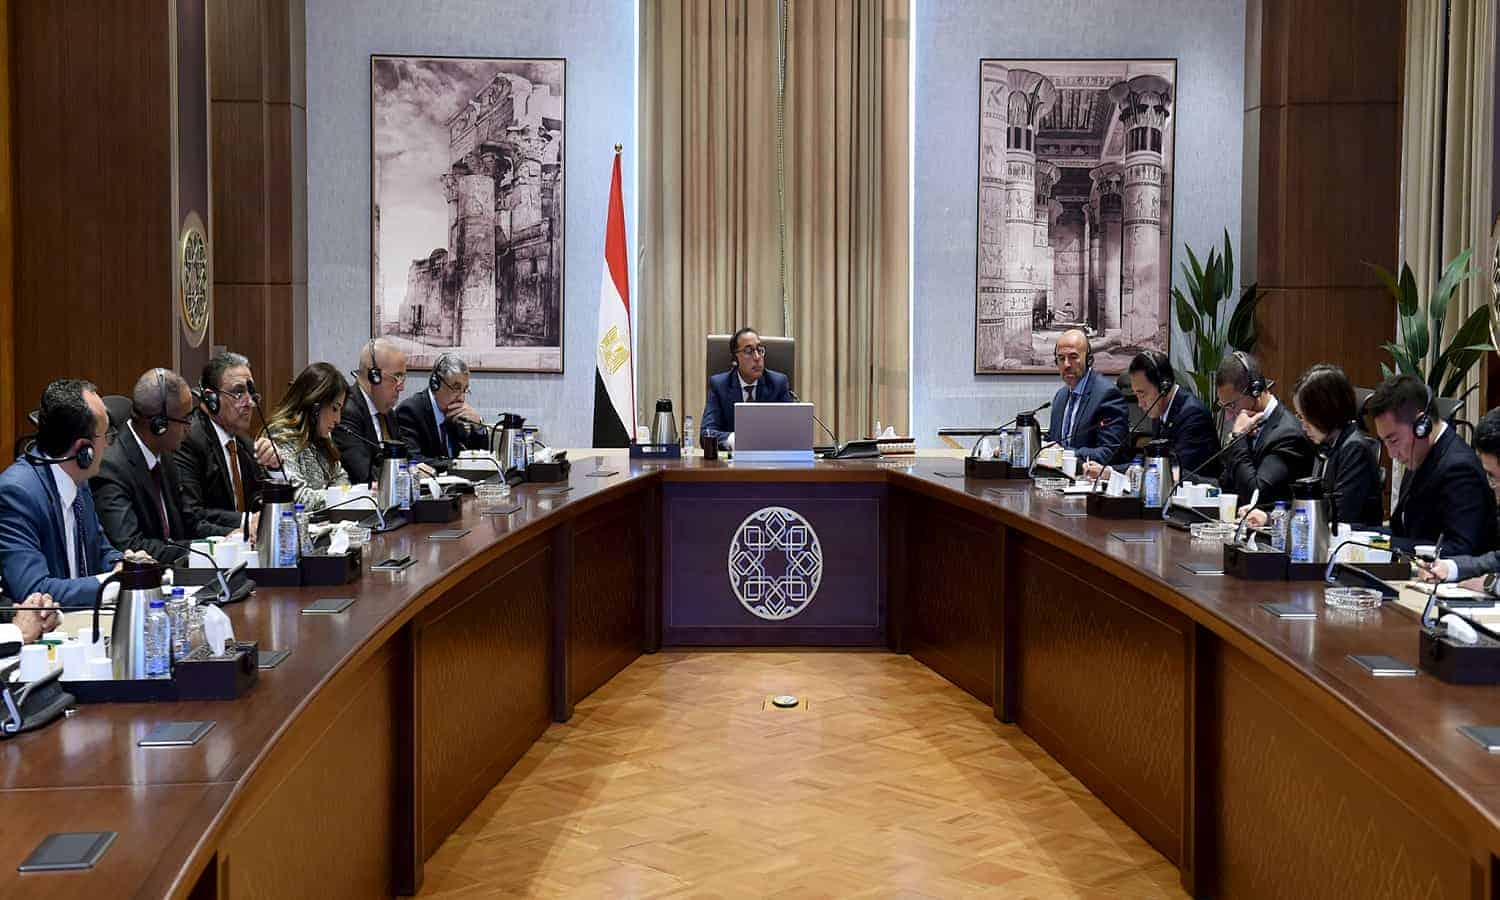  المصرية للاتصالات وهواوى توقعان اتفاقية  لتوفير حلول فى مجال التحول الرقمي
